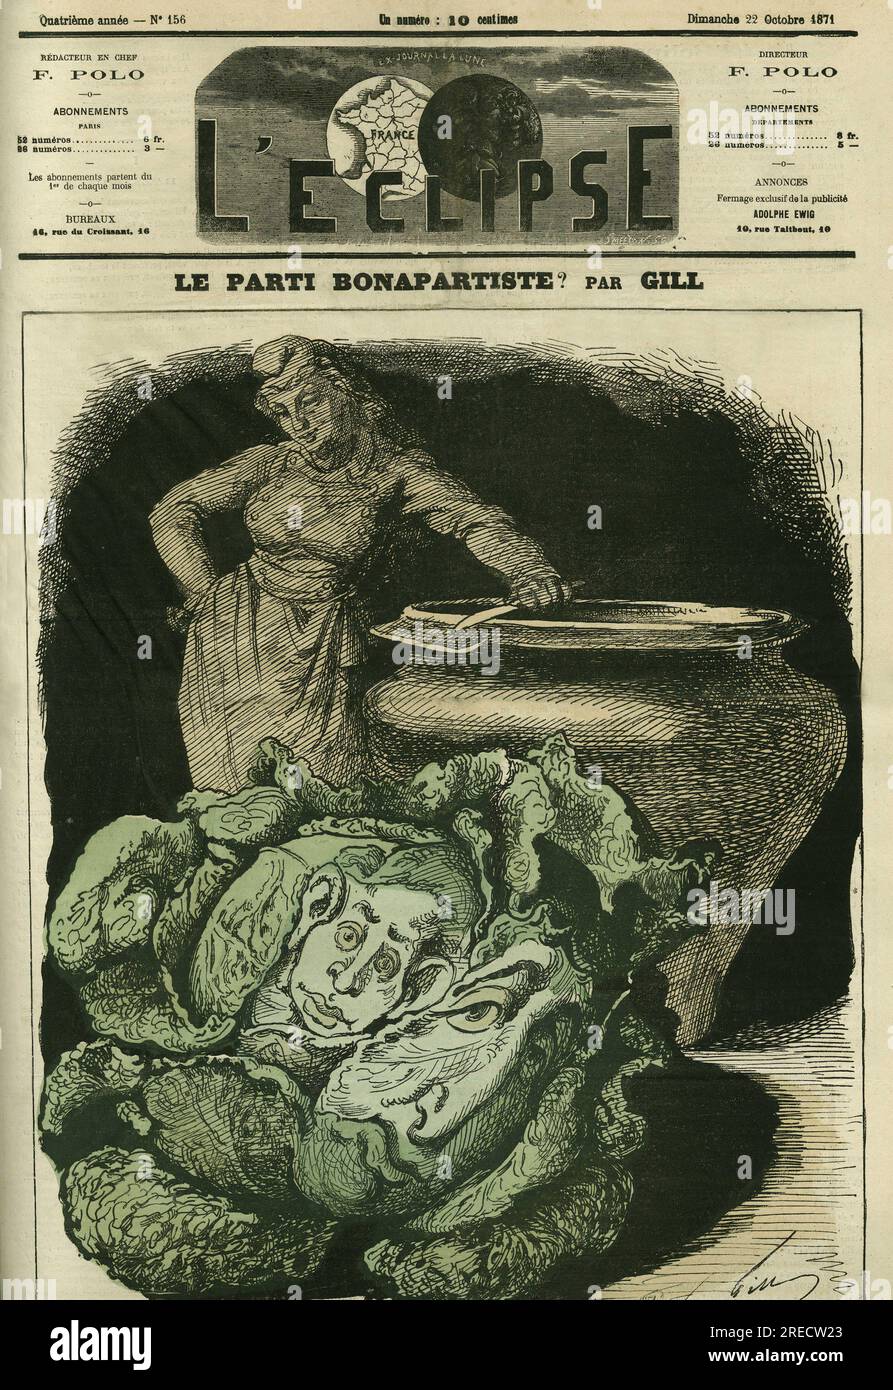 'Le parti bonapartiste', Louis-Philippe d'Orleans (1838-1894) 'echoue' en choux devant la marmite de la Republique. Couverture in 'L'Eclipse' par Gill, le 22 octobre 1871, Paris. Stock Photo